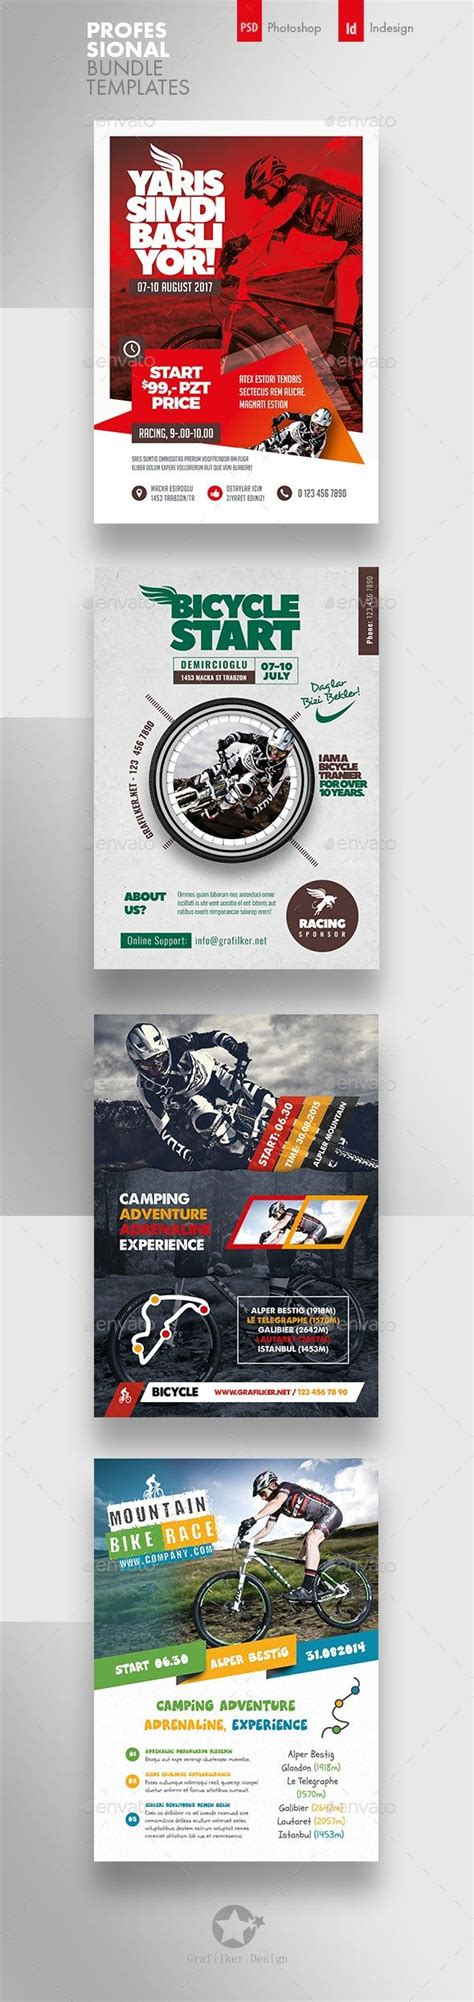 Bicycle Racing Flyer Bundle Templates | Flyer, Business flyer templates, Templates